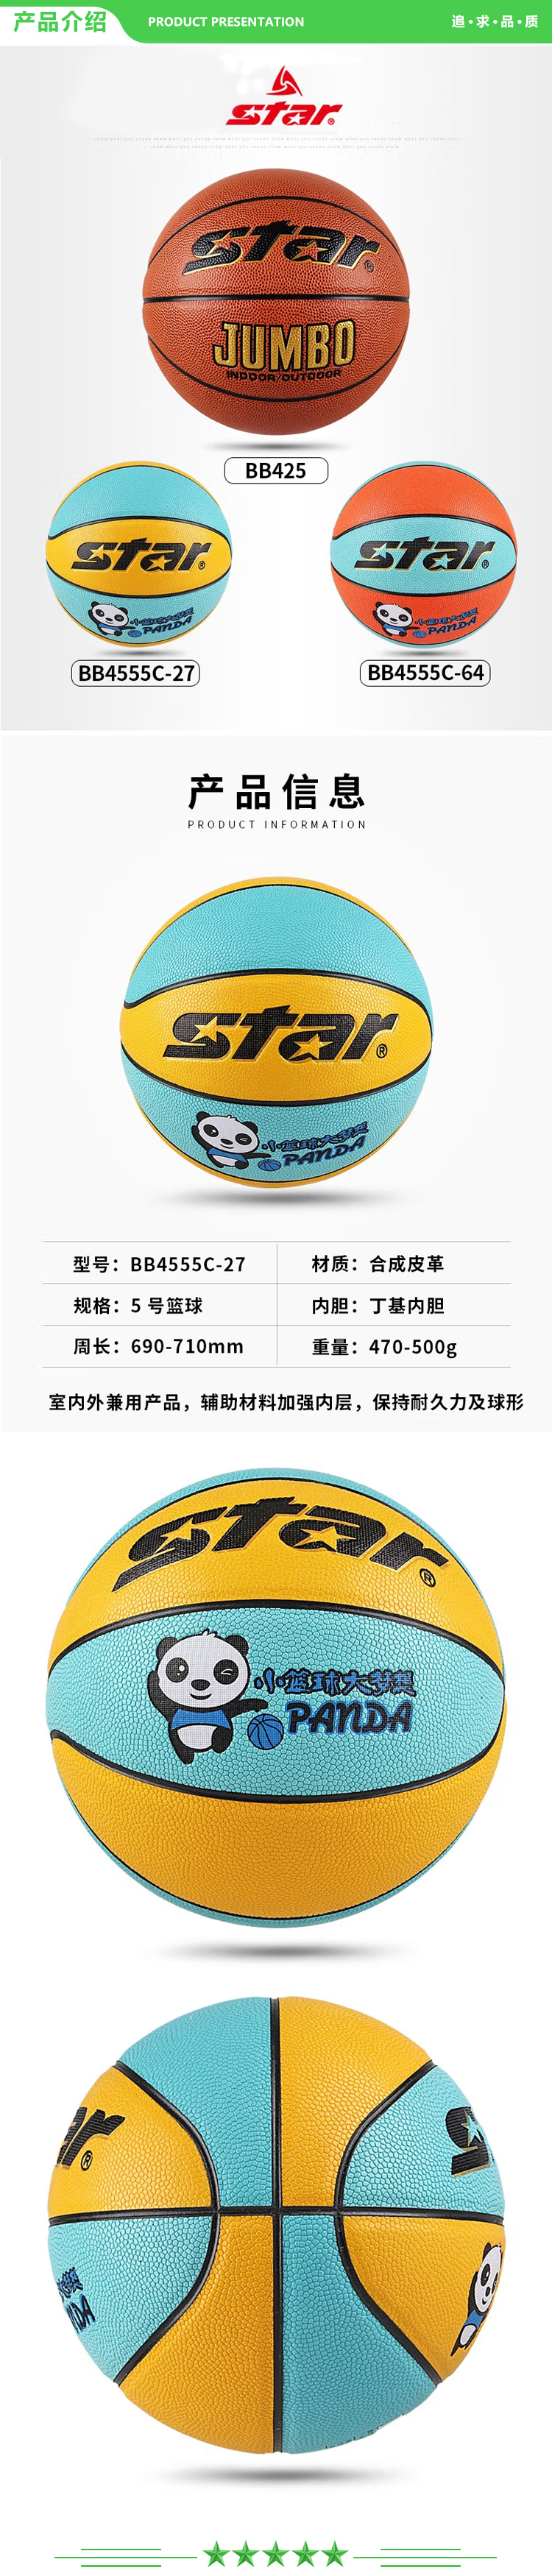 世达 star BB4555C-27（5号儿童用篮球）黄蓝色 篮球 青少年中学生室内外防滑耐磨蓝球.jpg